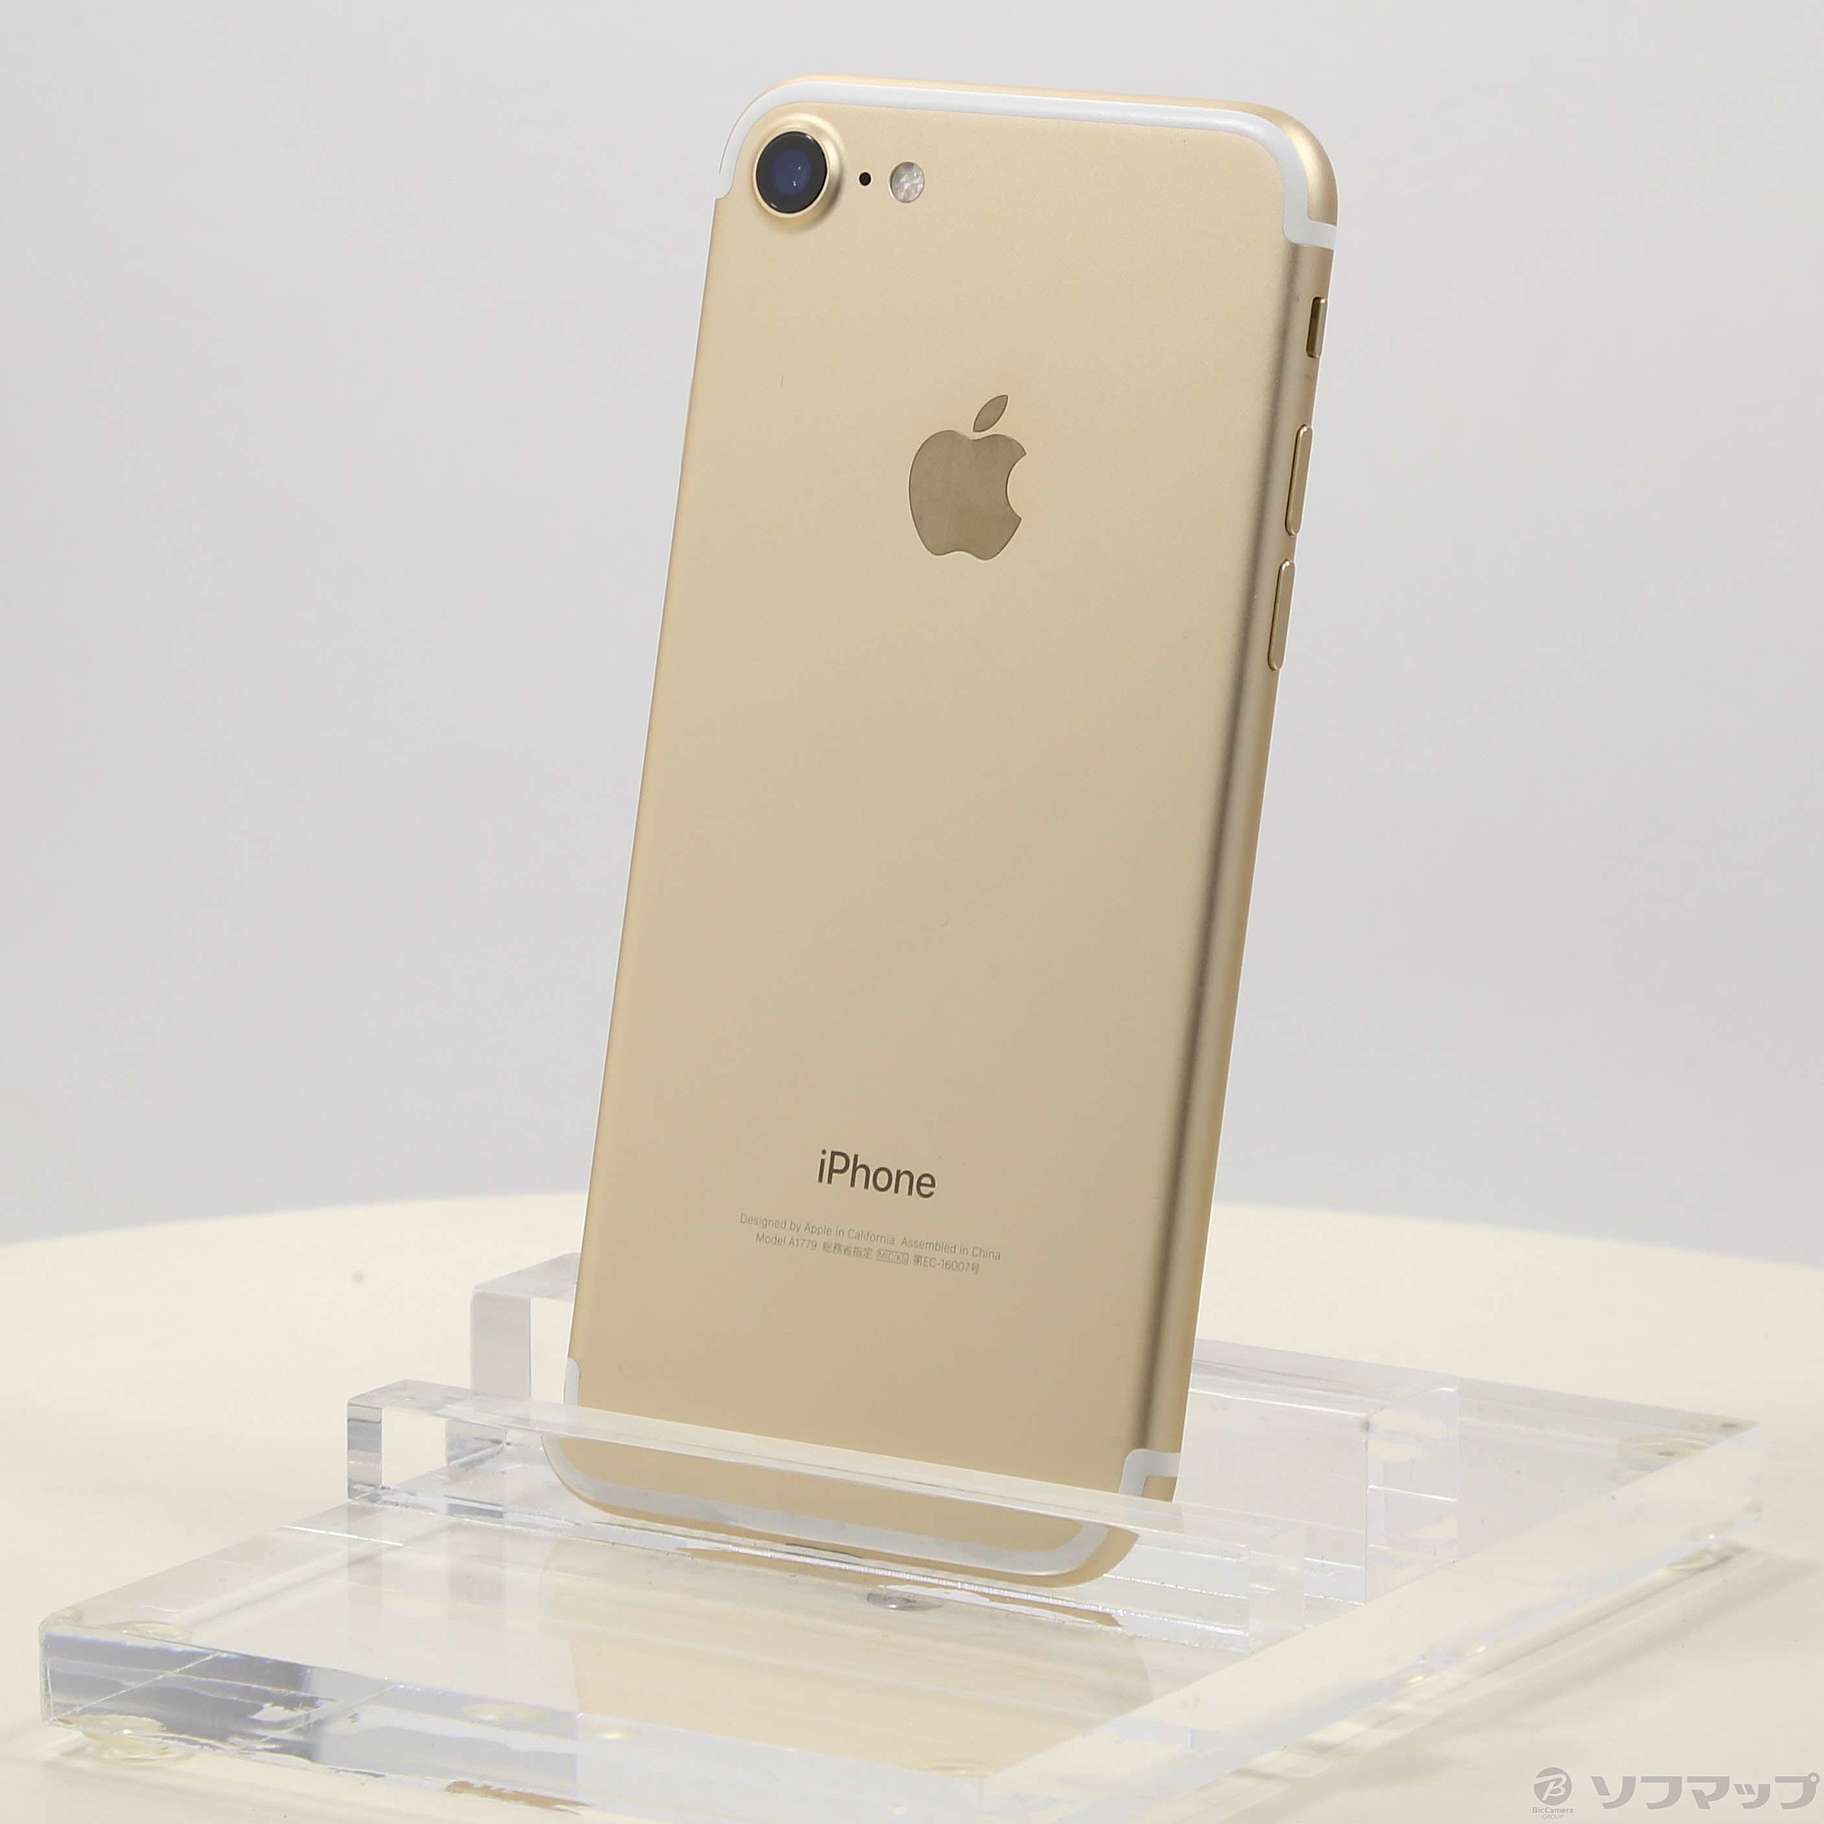 欲しいの Apple iPhone7 32GB ゴールド MNCG2J A lambda-mdl.de